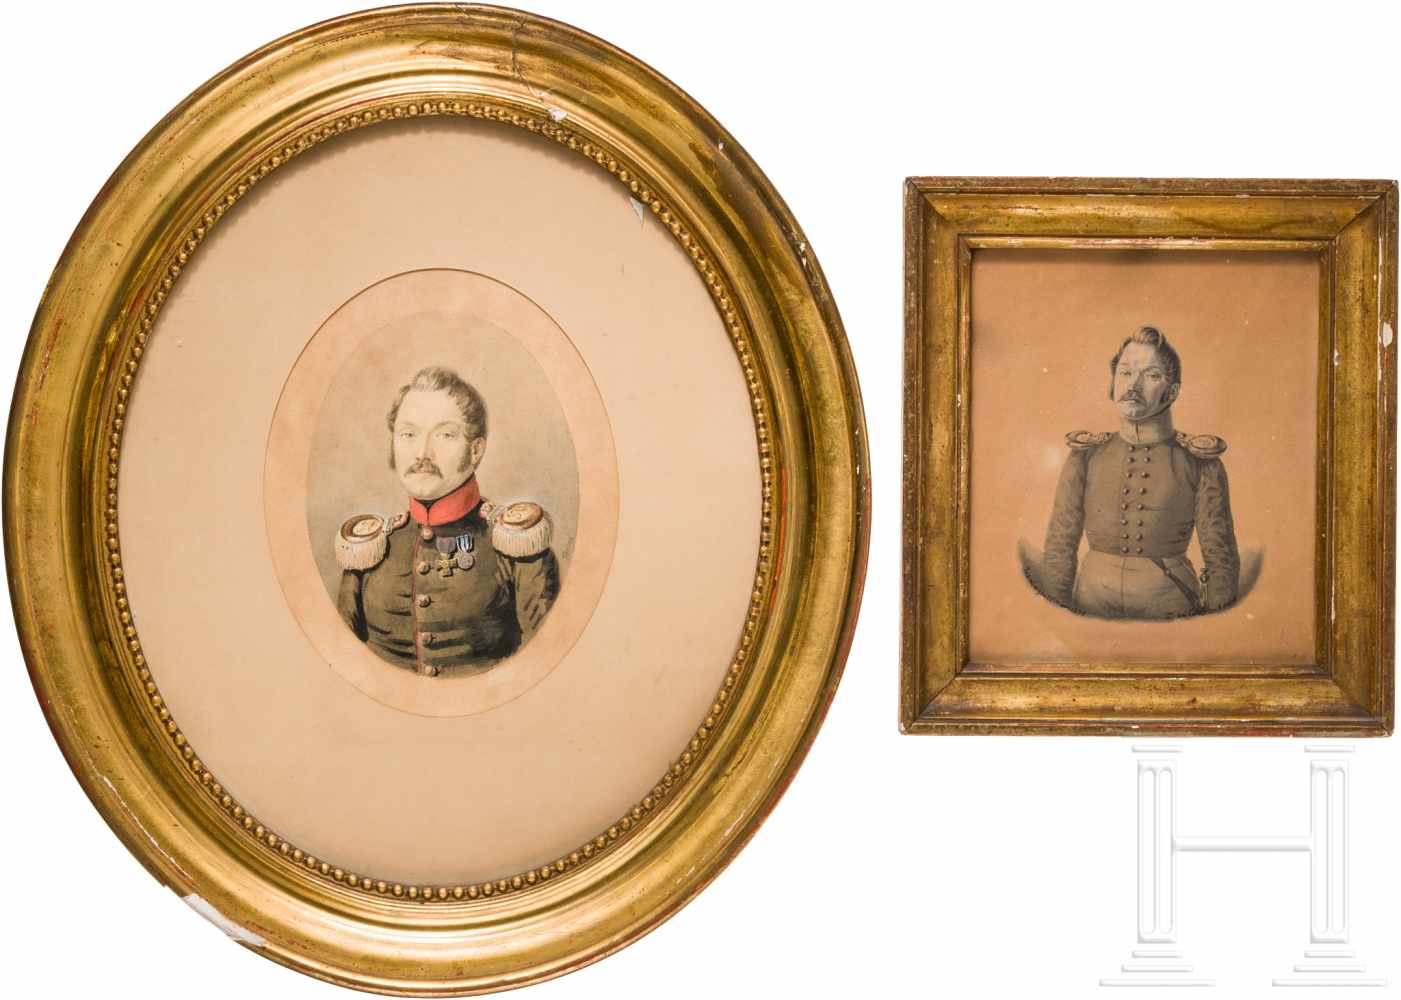 Offiziersfamilie von Pirch - zwei Portraits des Otto Claus Gützlaff von Pirch (1804-55)Jeweils